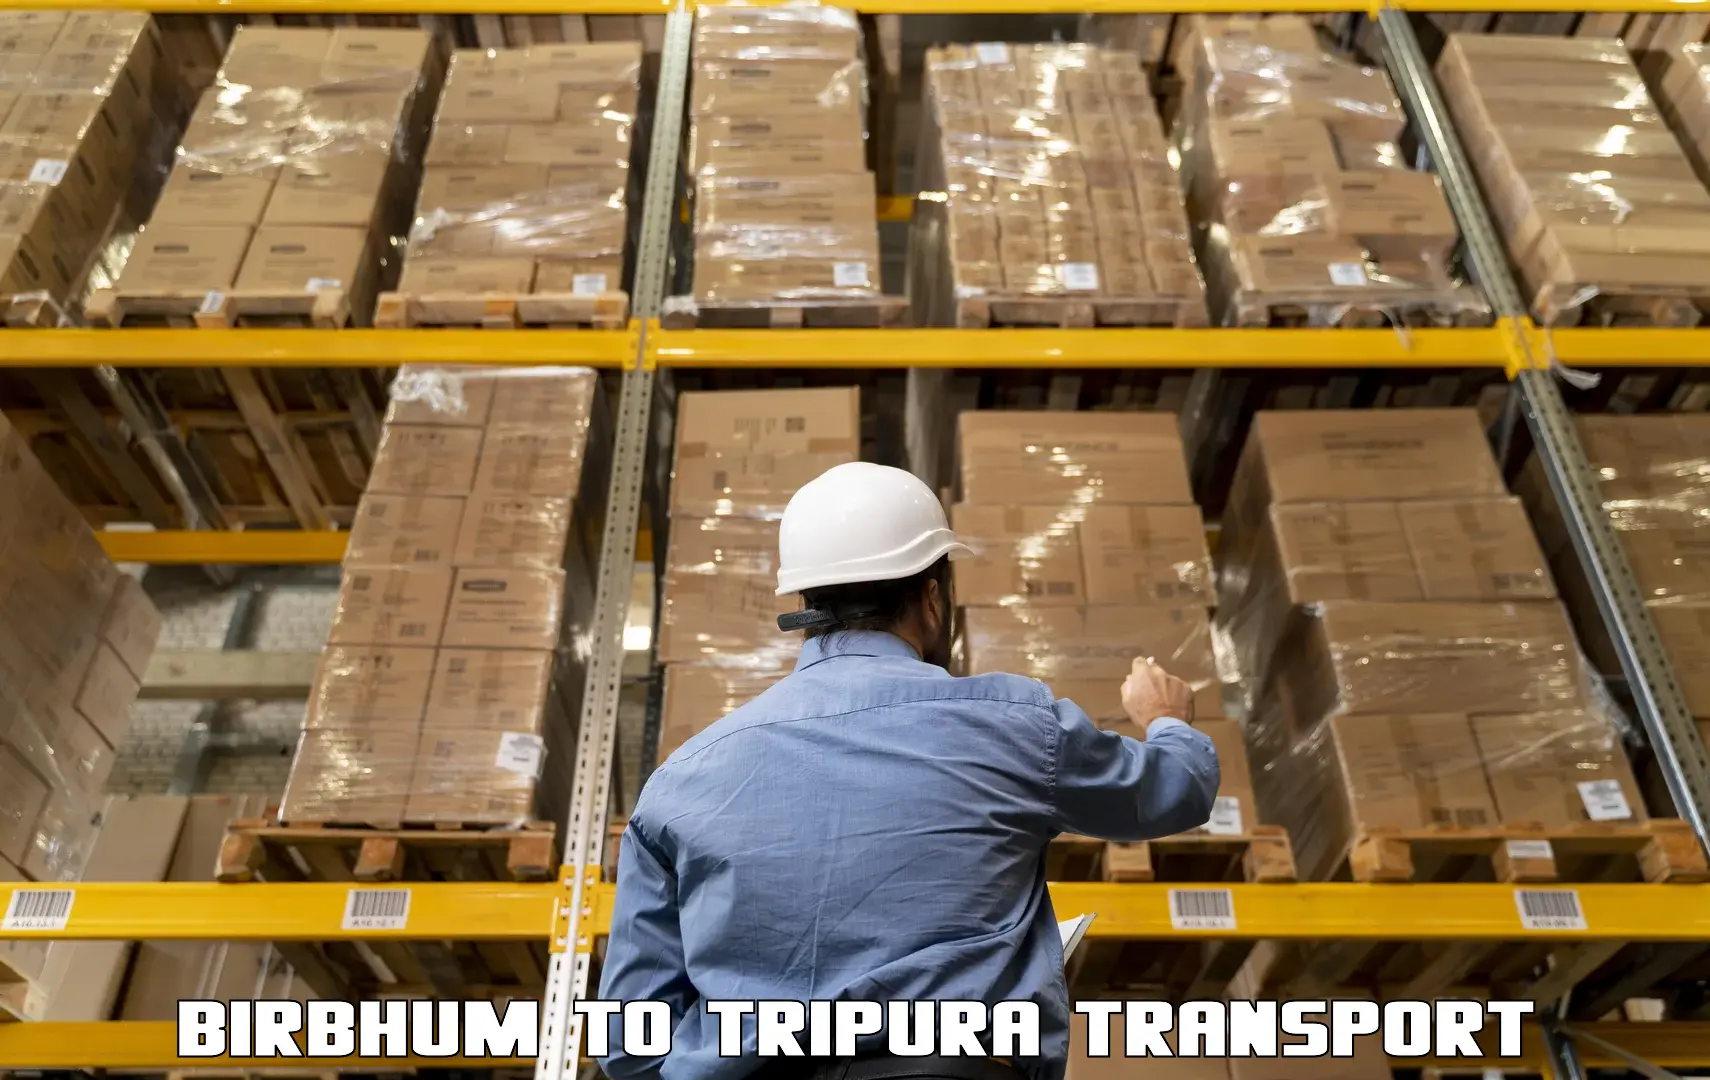 Air cargo transport services Birbhum to Udaipur Tripura